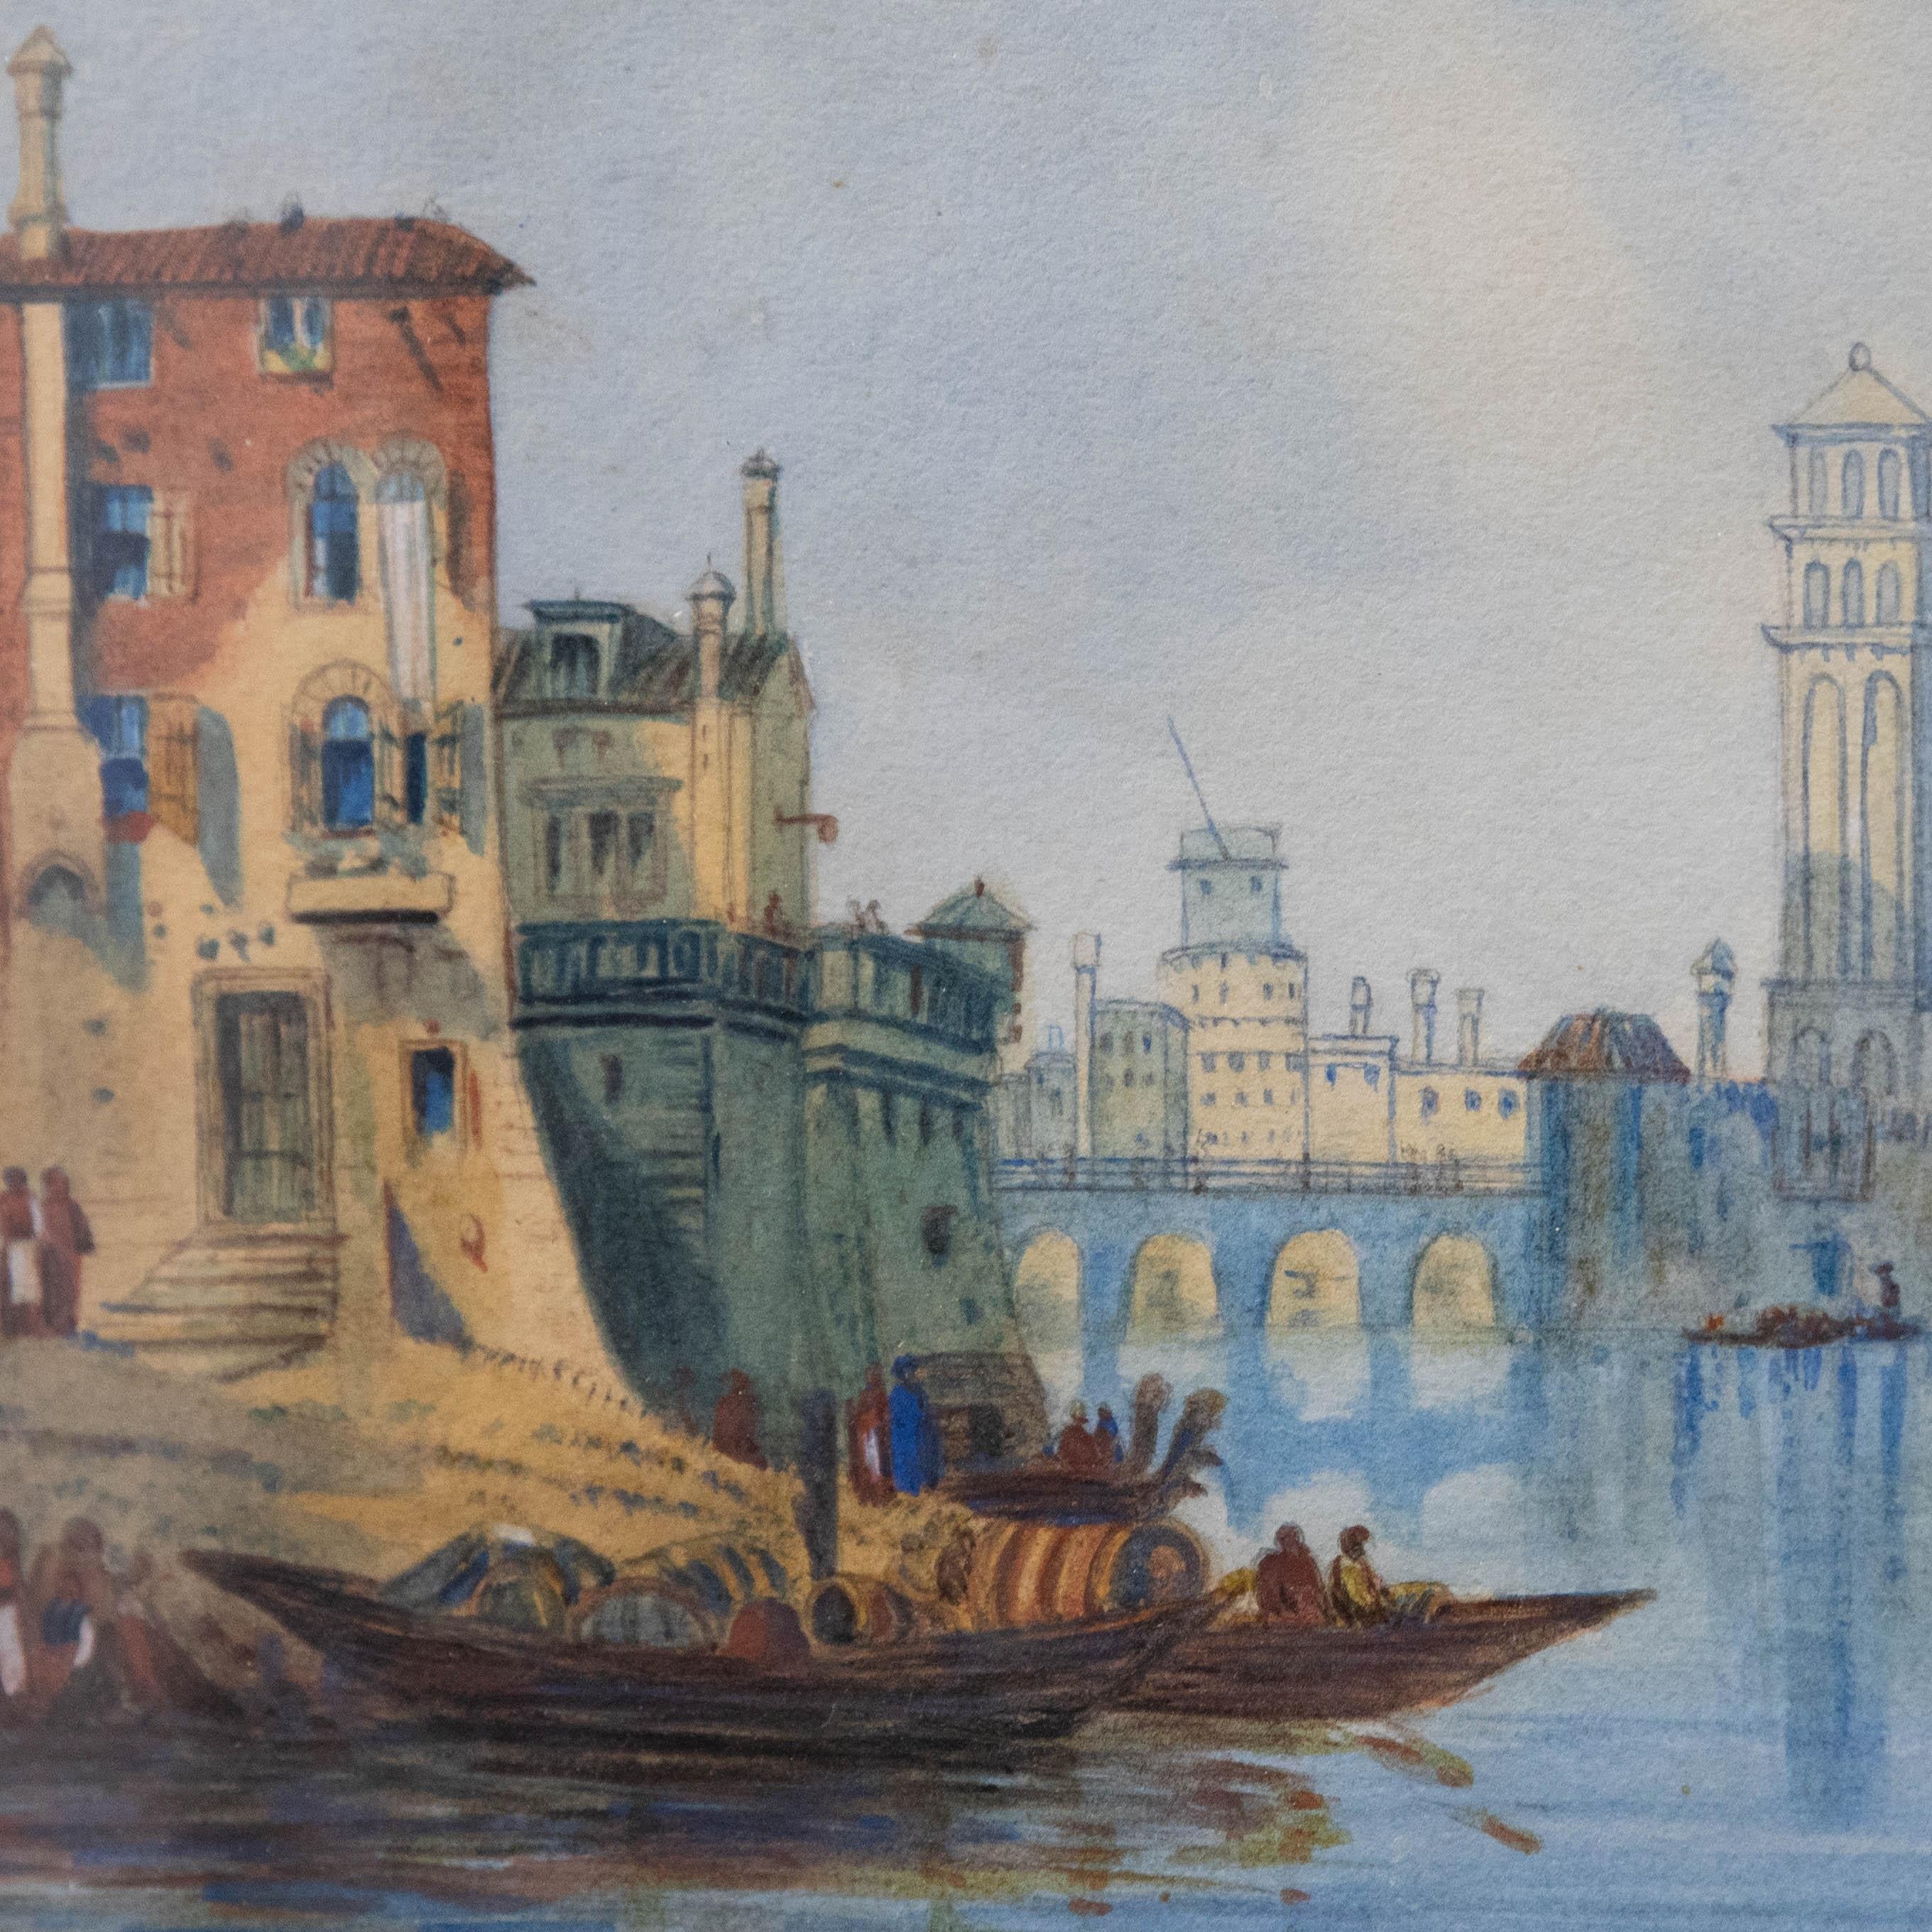 R.H.T – Aquarell des späten 19. Jahrhunderts, Winter in Venedig 1